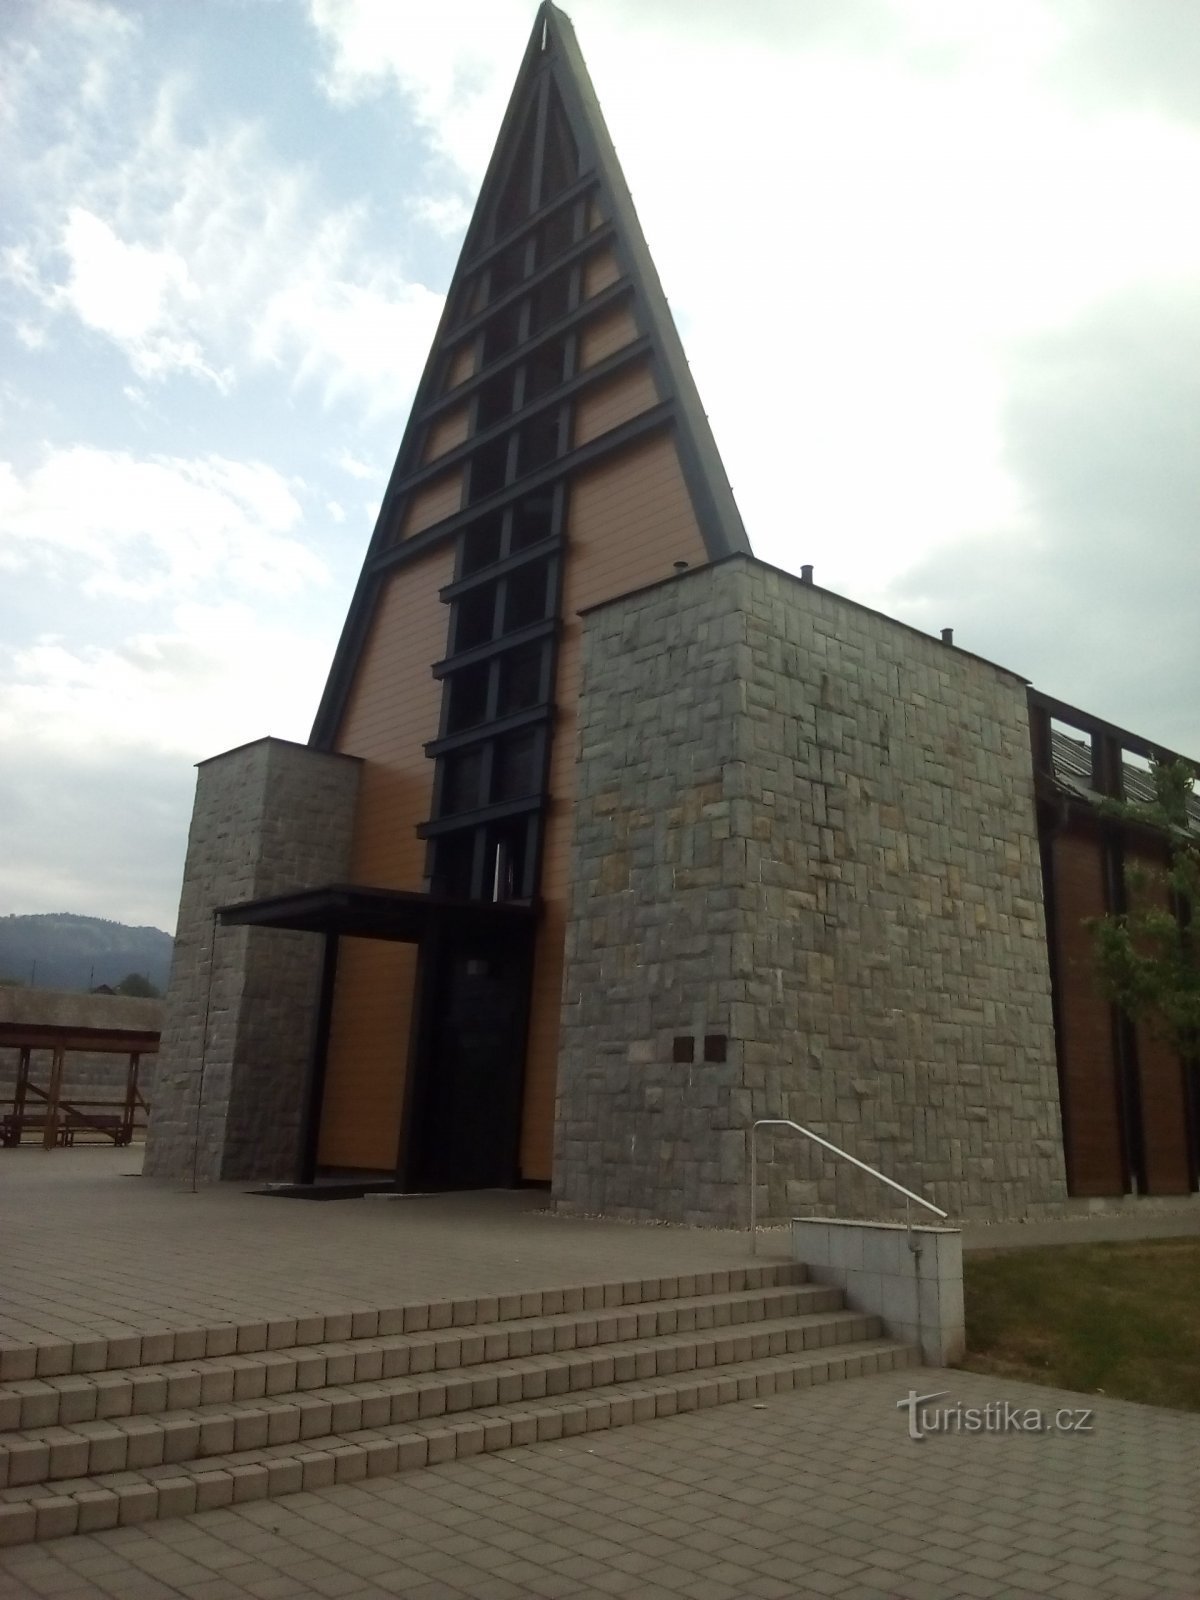 SCEAV-kirkko Písekissä